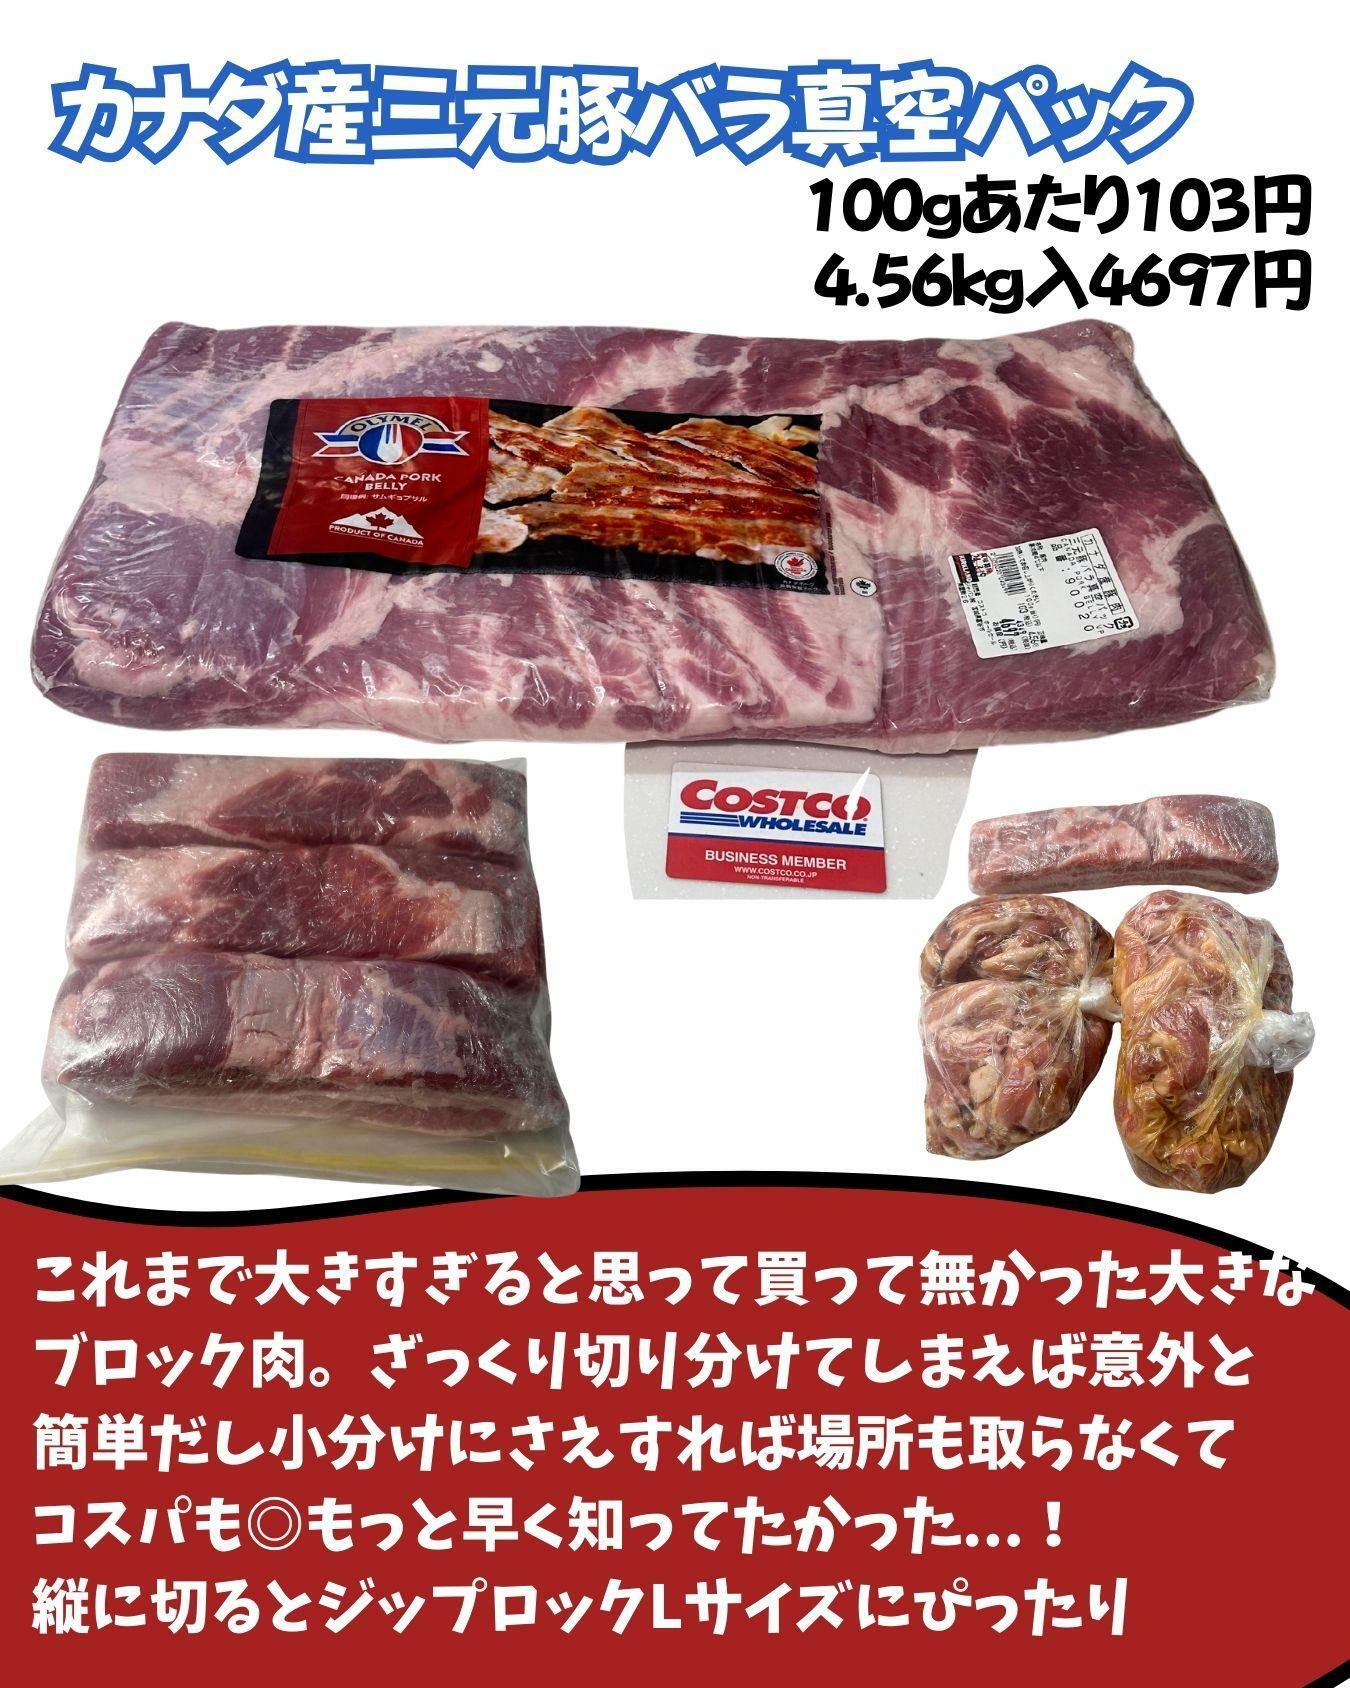 【コストコ】三元豚バラ肉のブロックを購入